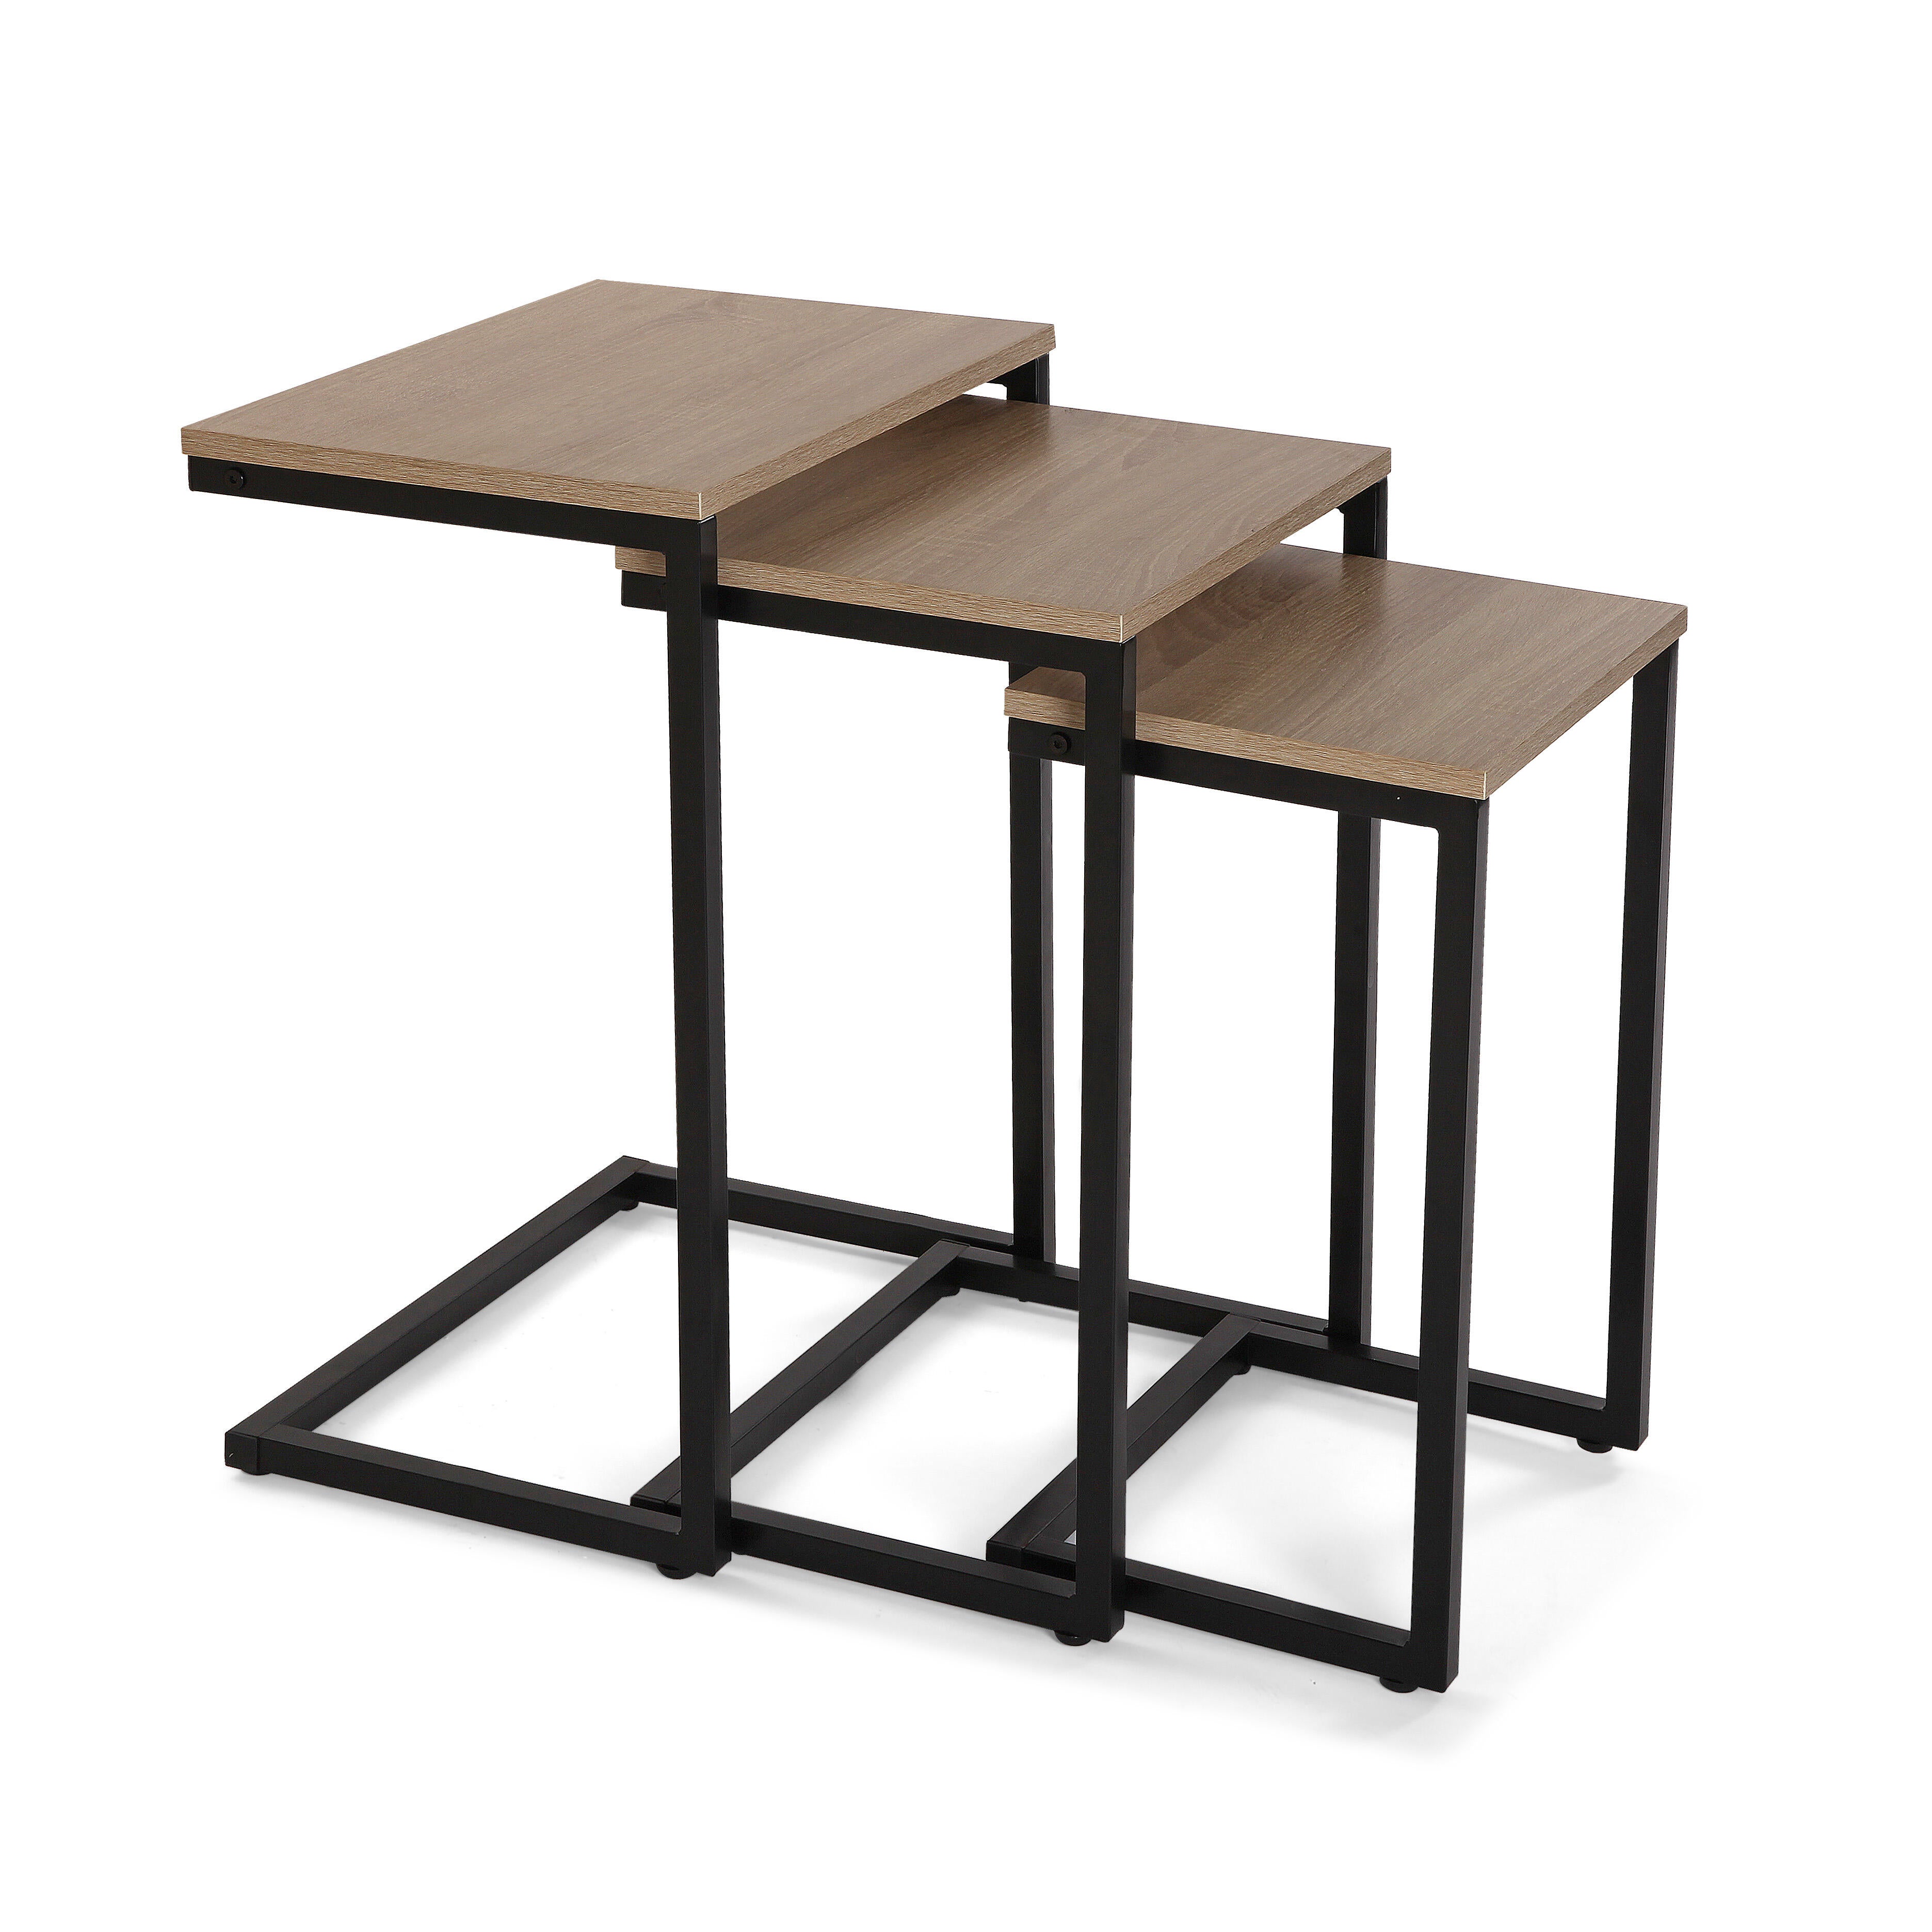 Kit 3 mesas industrial de madera oscura y estructura metálica negra 30x60x46cm